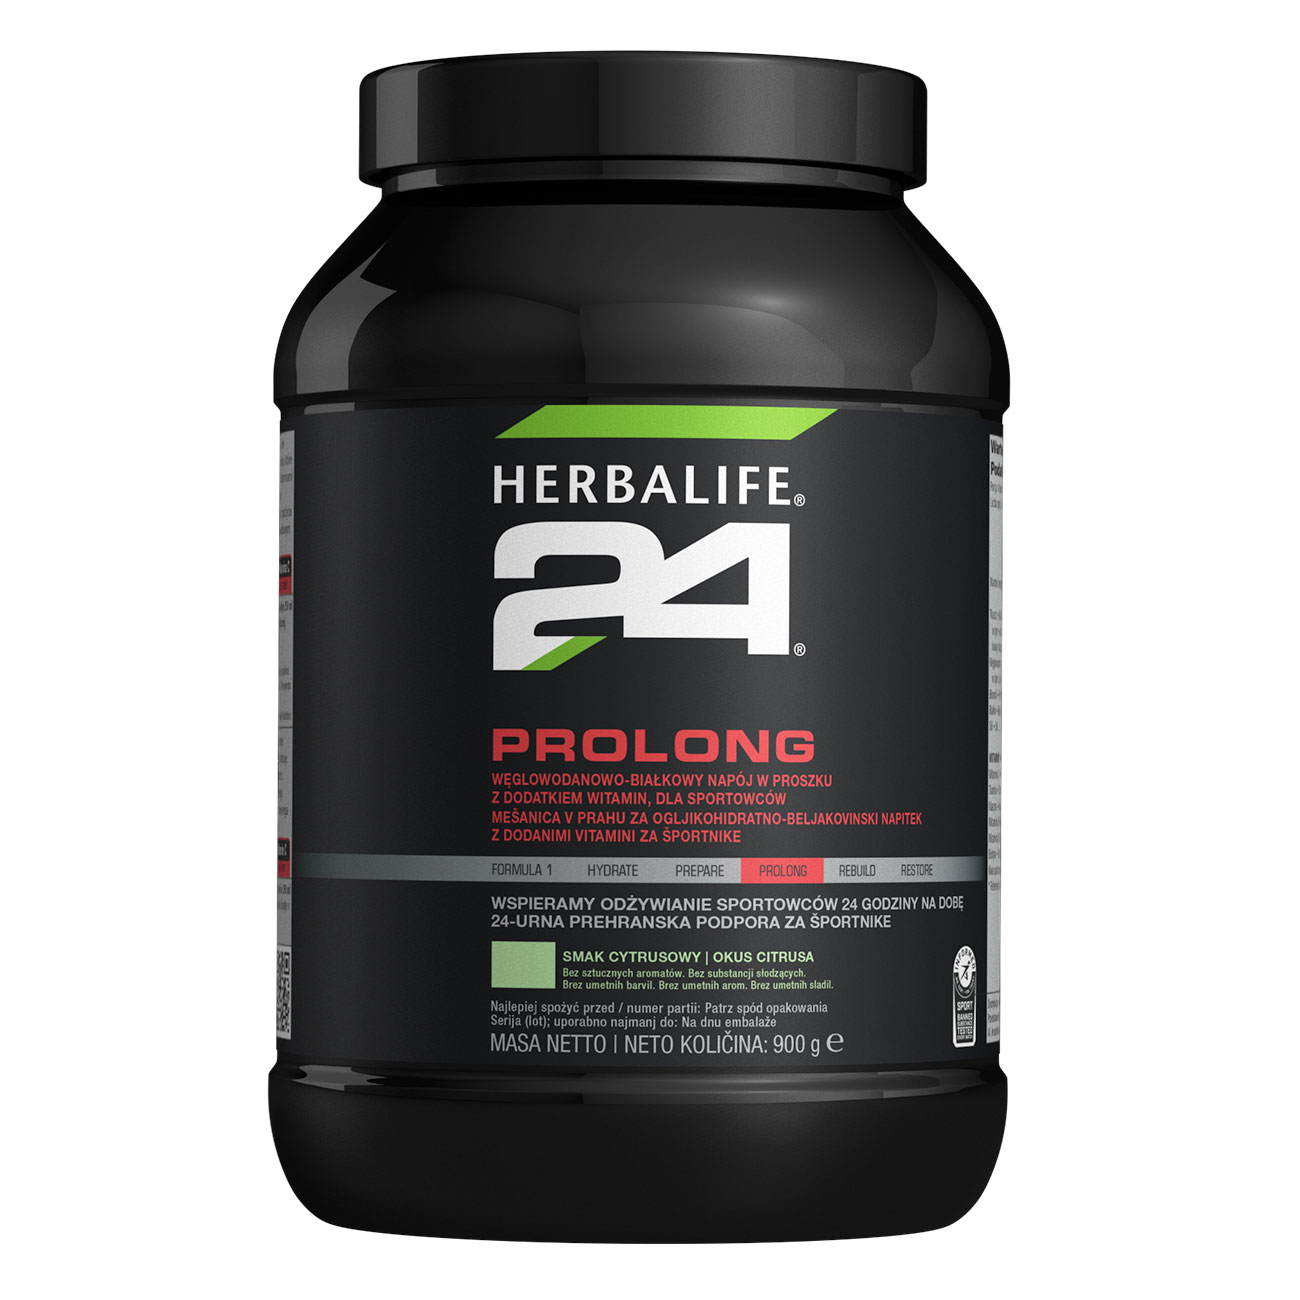 H24 Prolong Napój proteinowo-węglowodanowy o smaku cytrusowym product shot